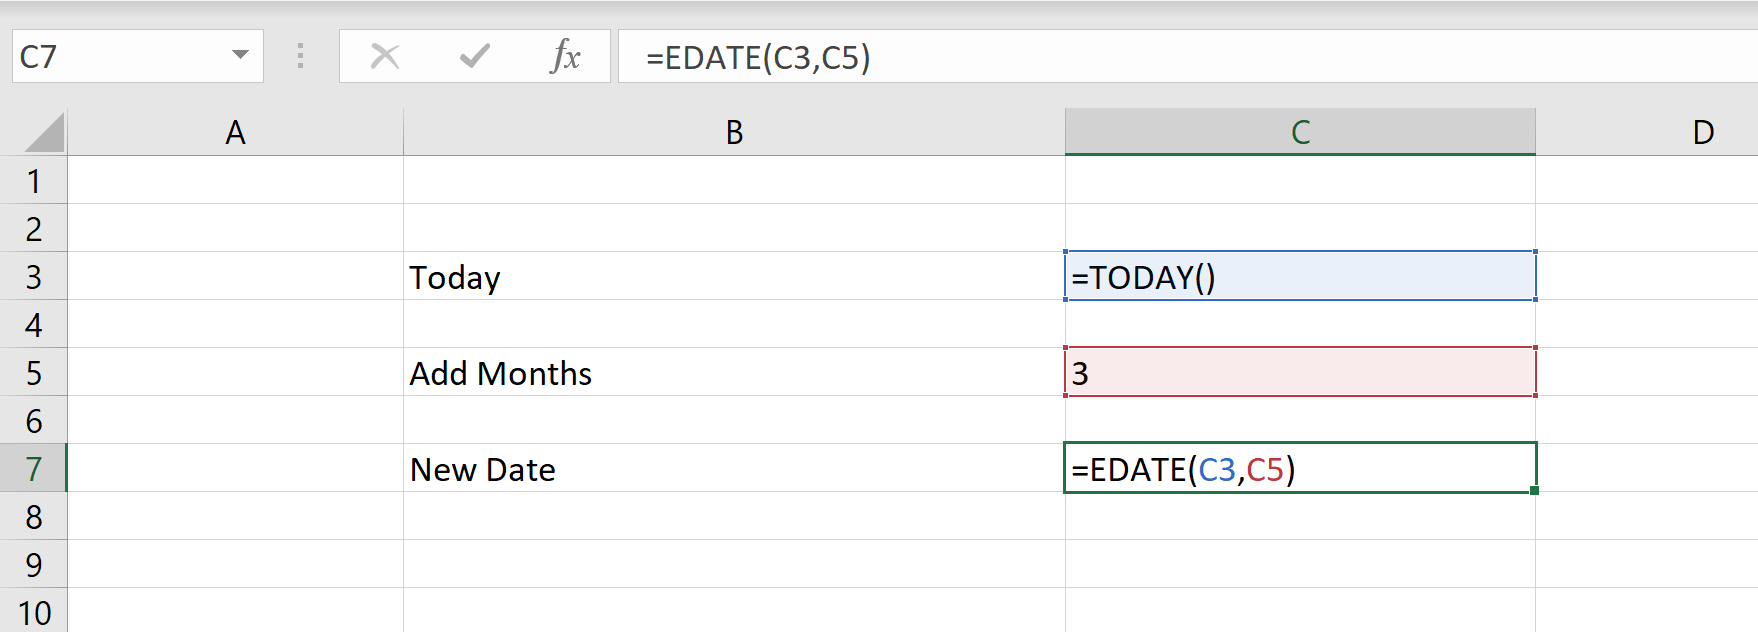 Excelలో తేదీకి ఒక నెలను ఎలా జోడించాలి?